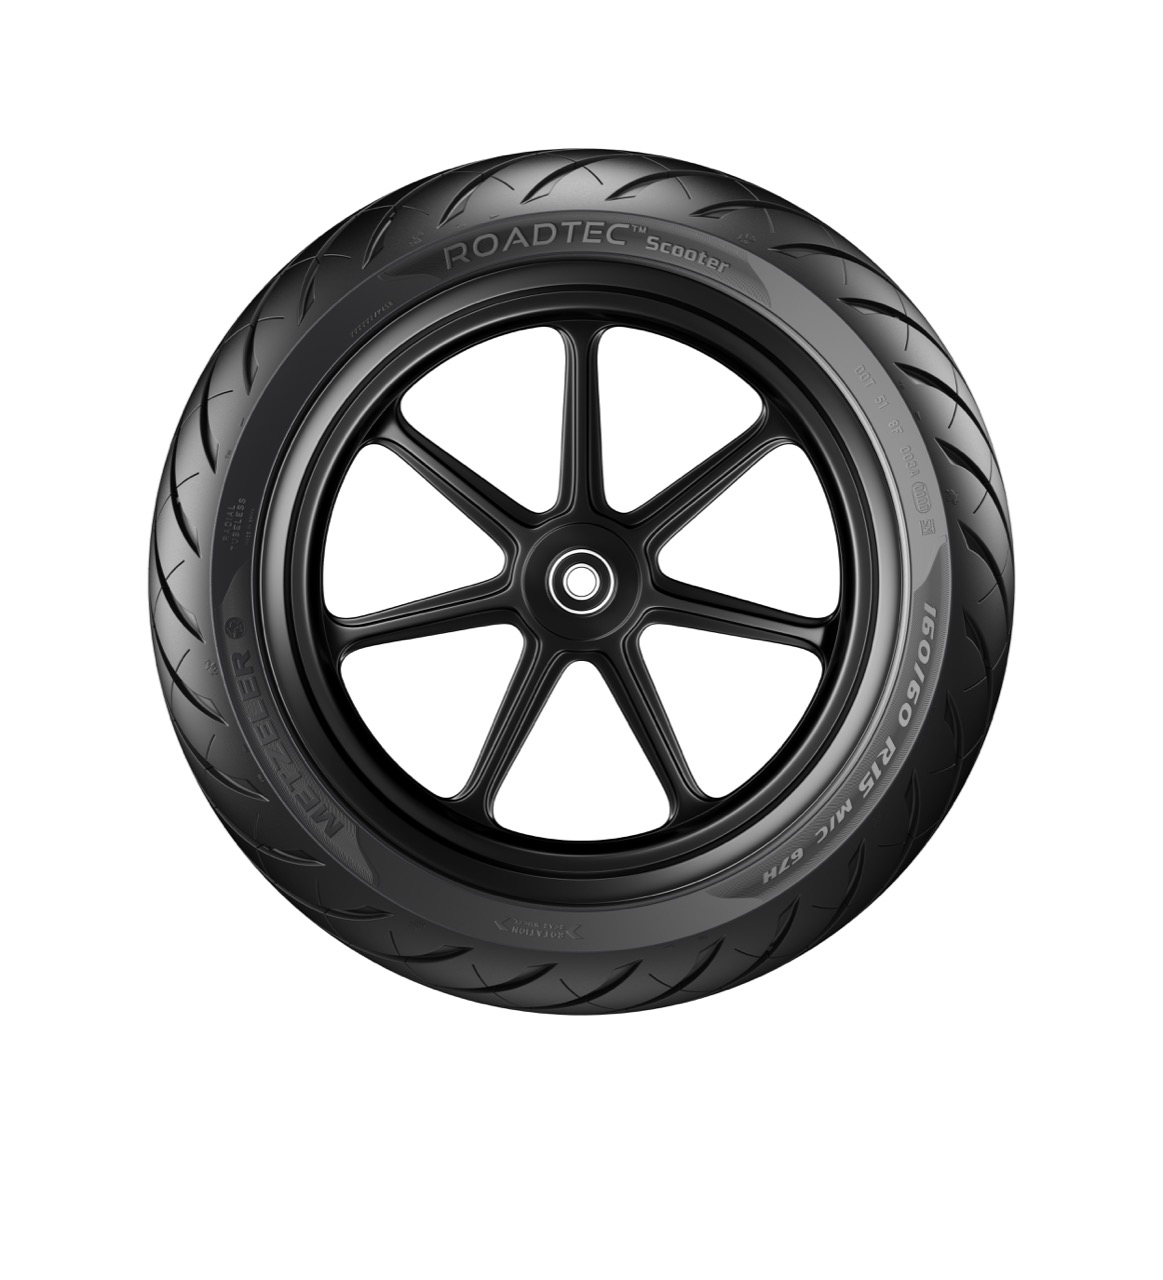 Metzeler - nuovi pneumatici 2020 